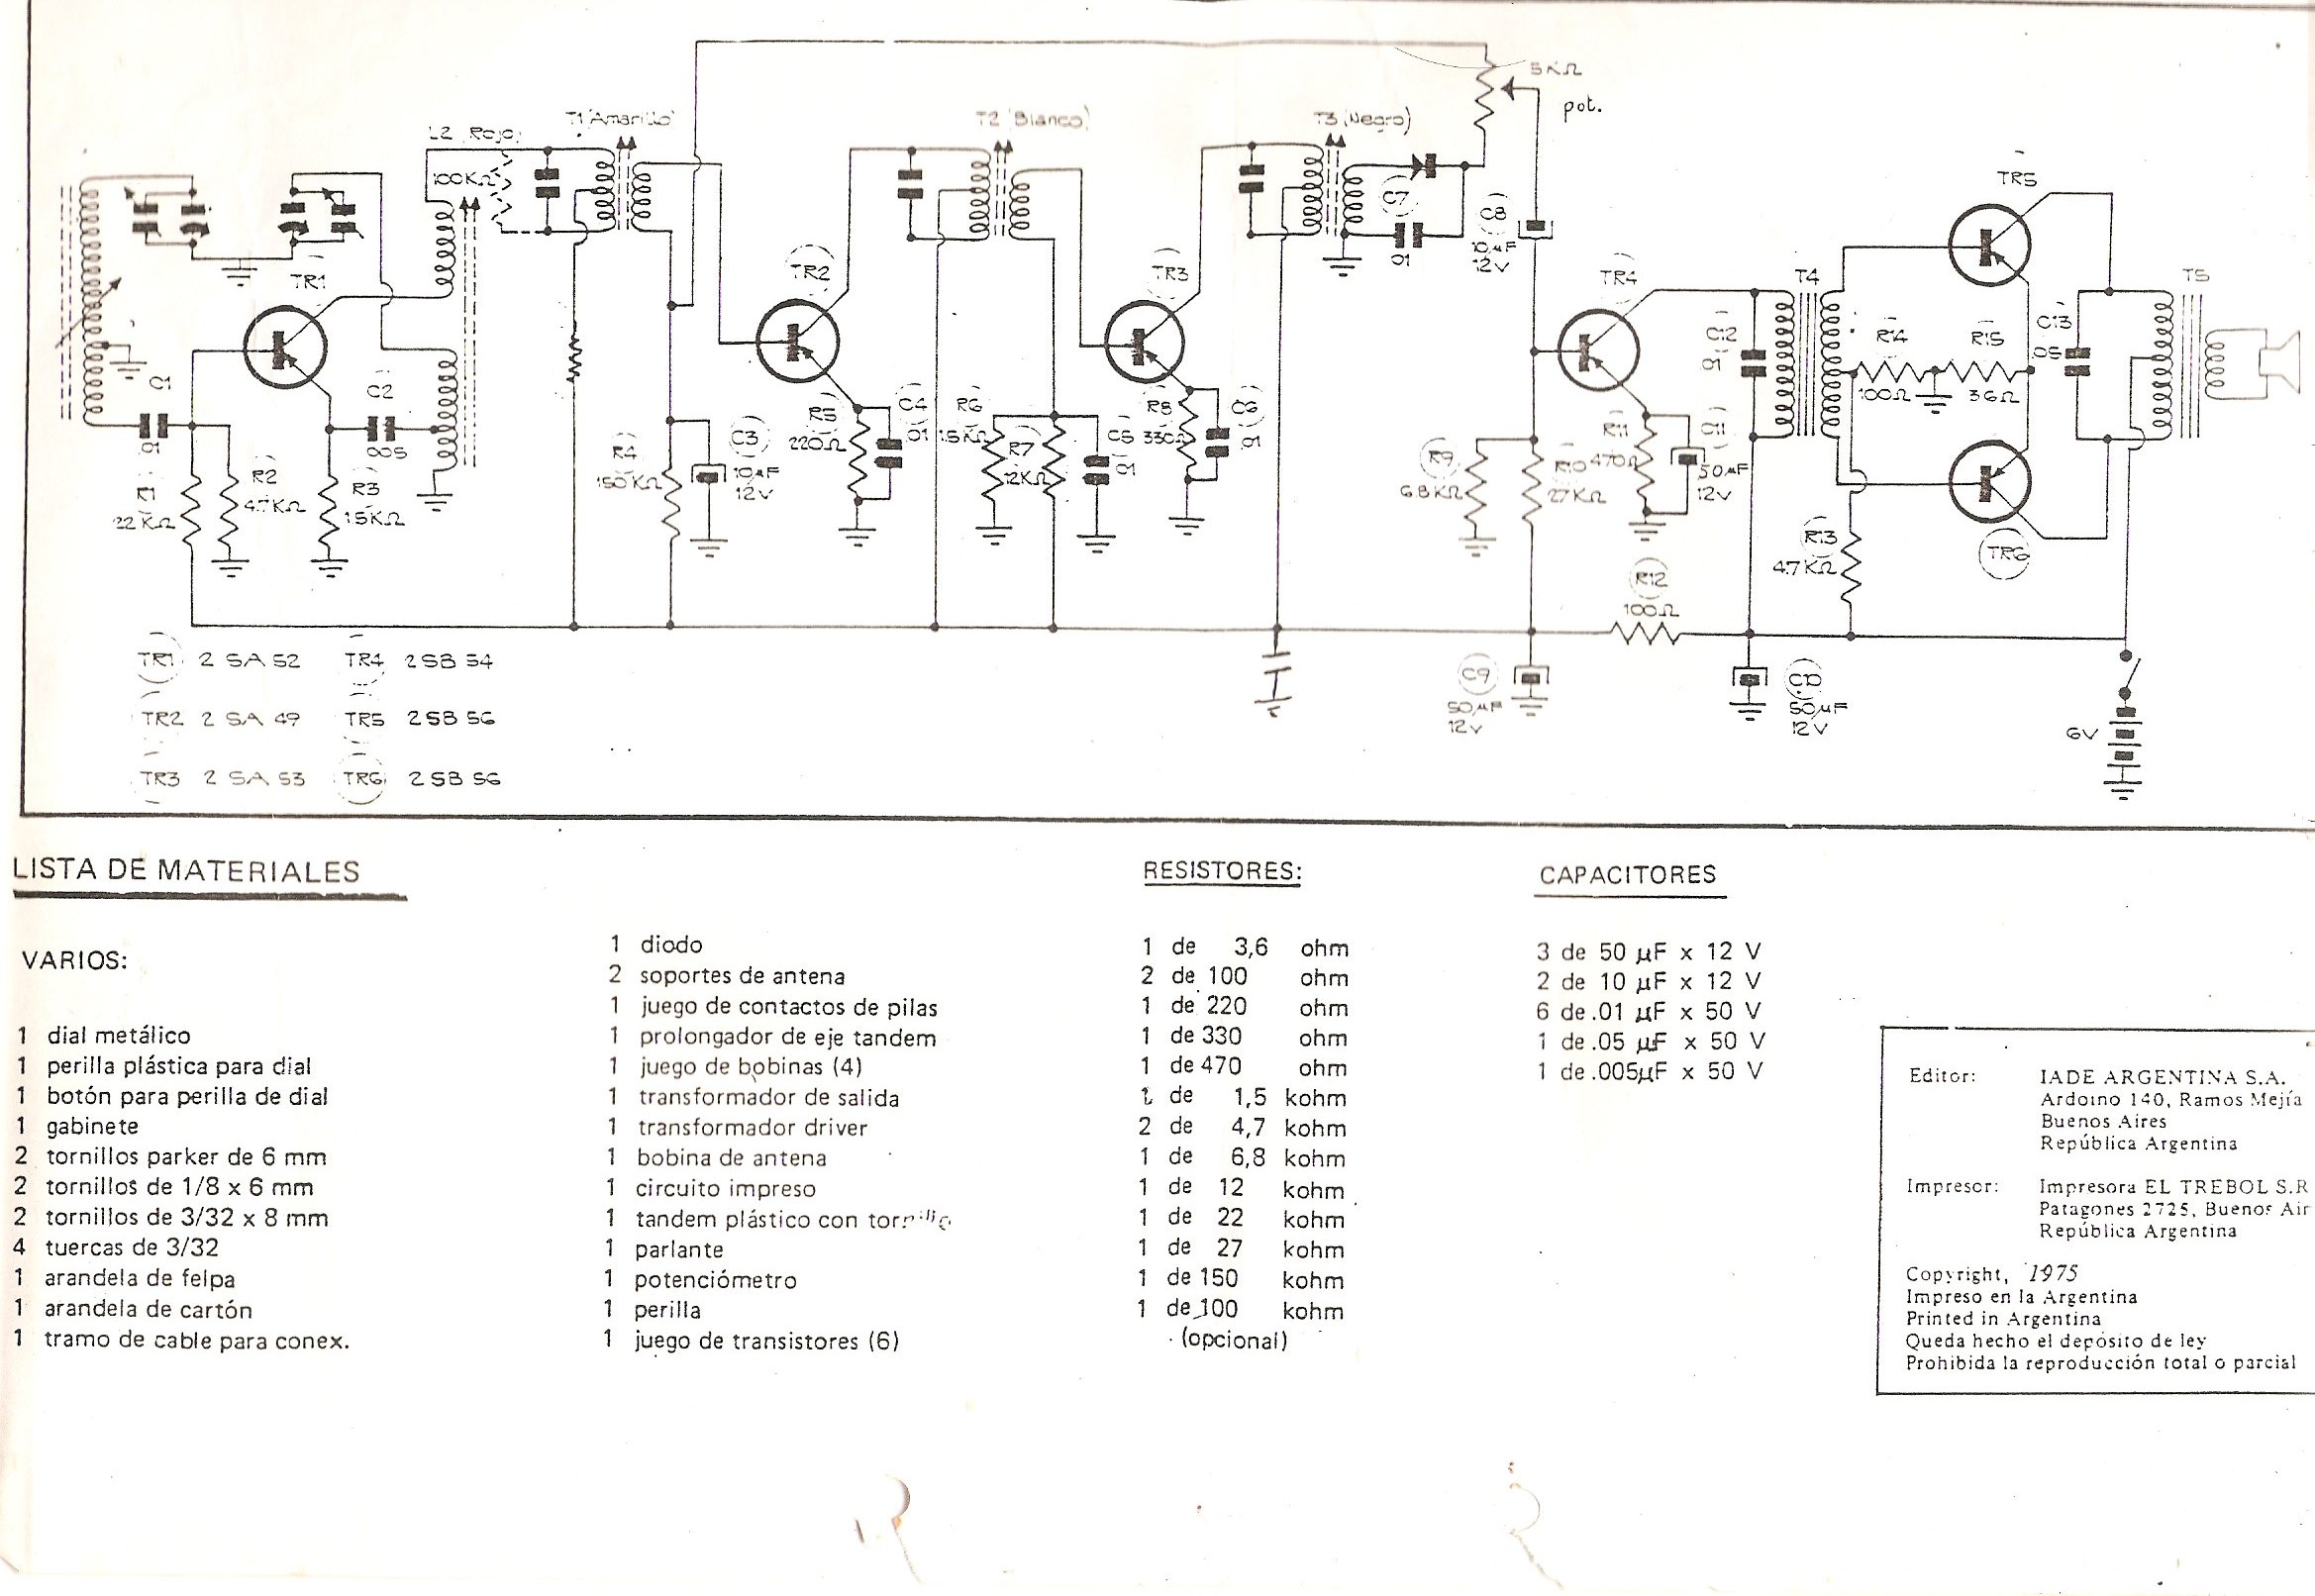 IADE  Squematic Diagram for constructing an 530 to 1600 Khz AM receiver. Diagrama eléctrico para la construcción de un receptor AM que abarca las frecuencias de onda media entre 530 y 1600 Mhz.